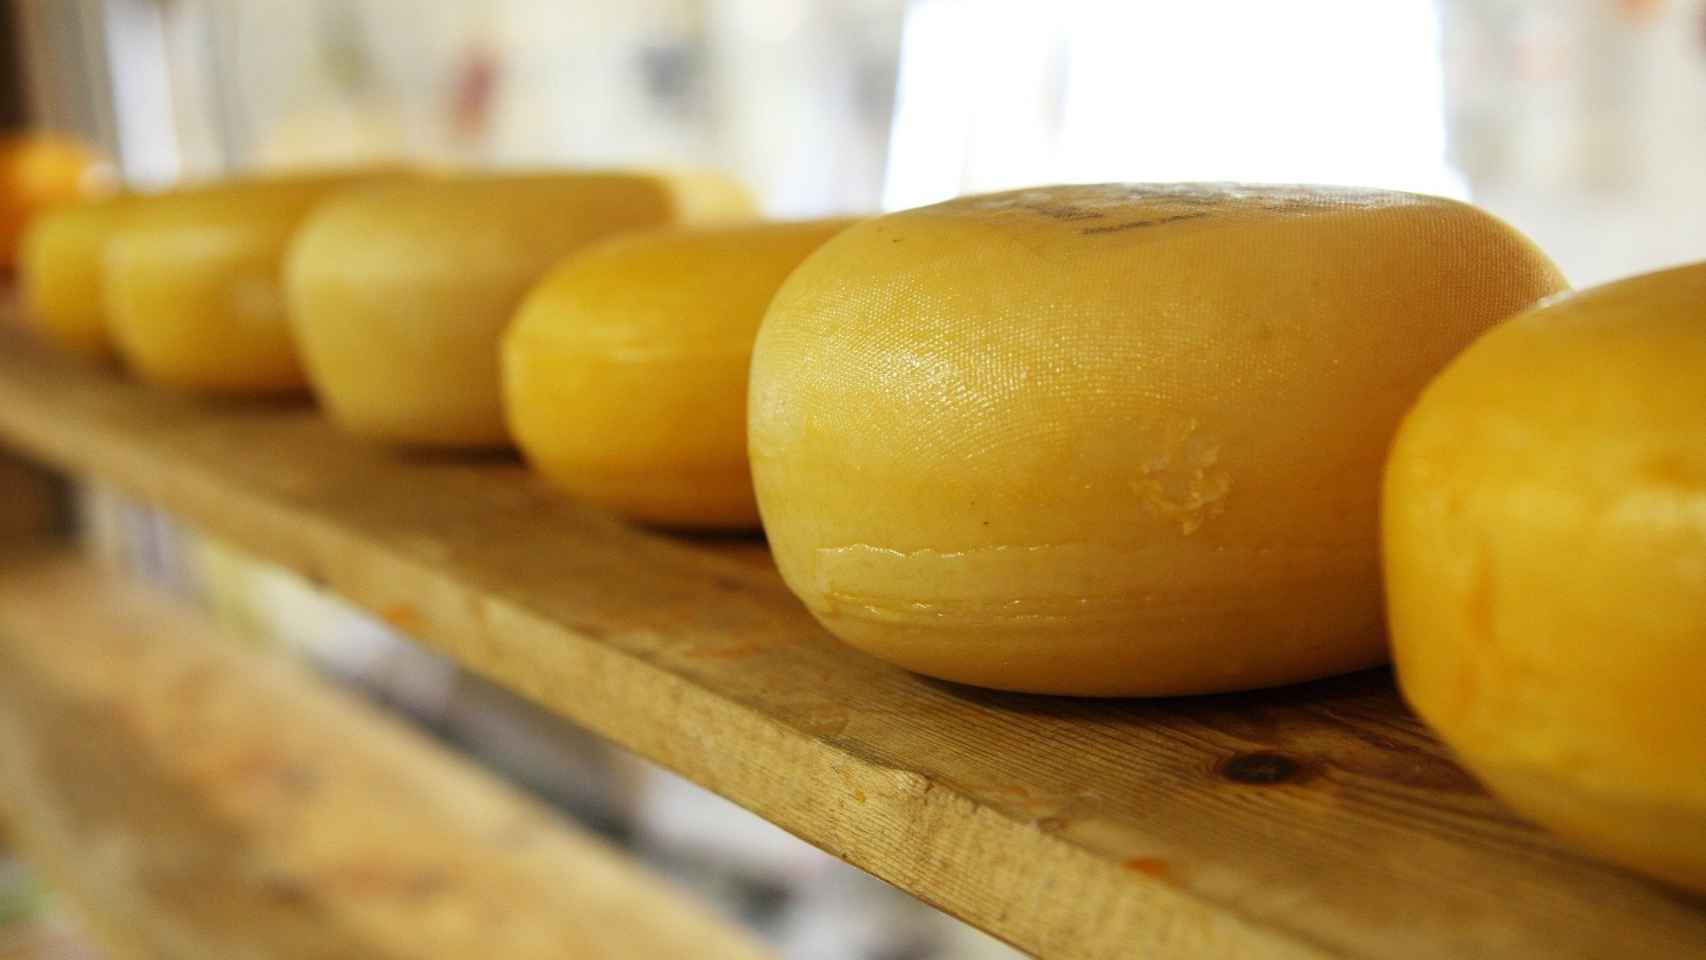 Te contamos todo sobre el queso Idiazábal, uno de los mejores